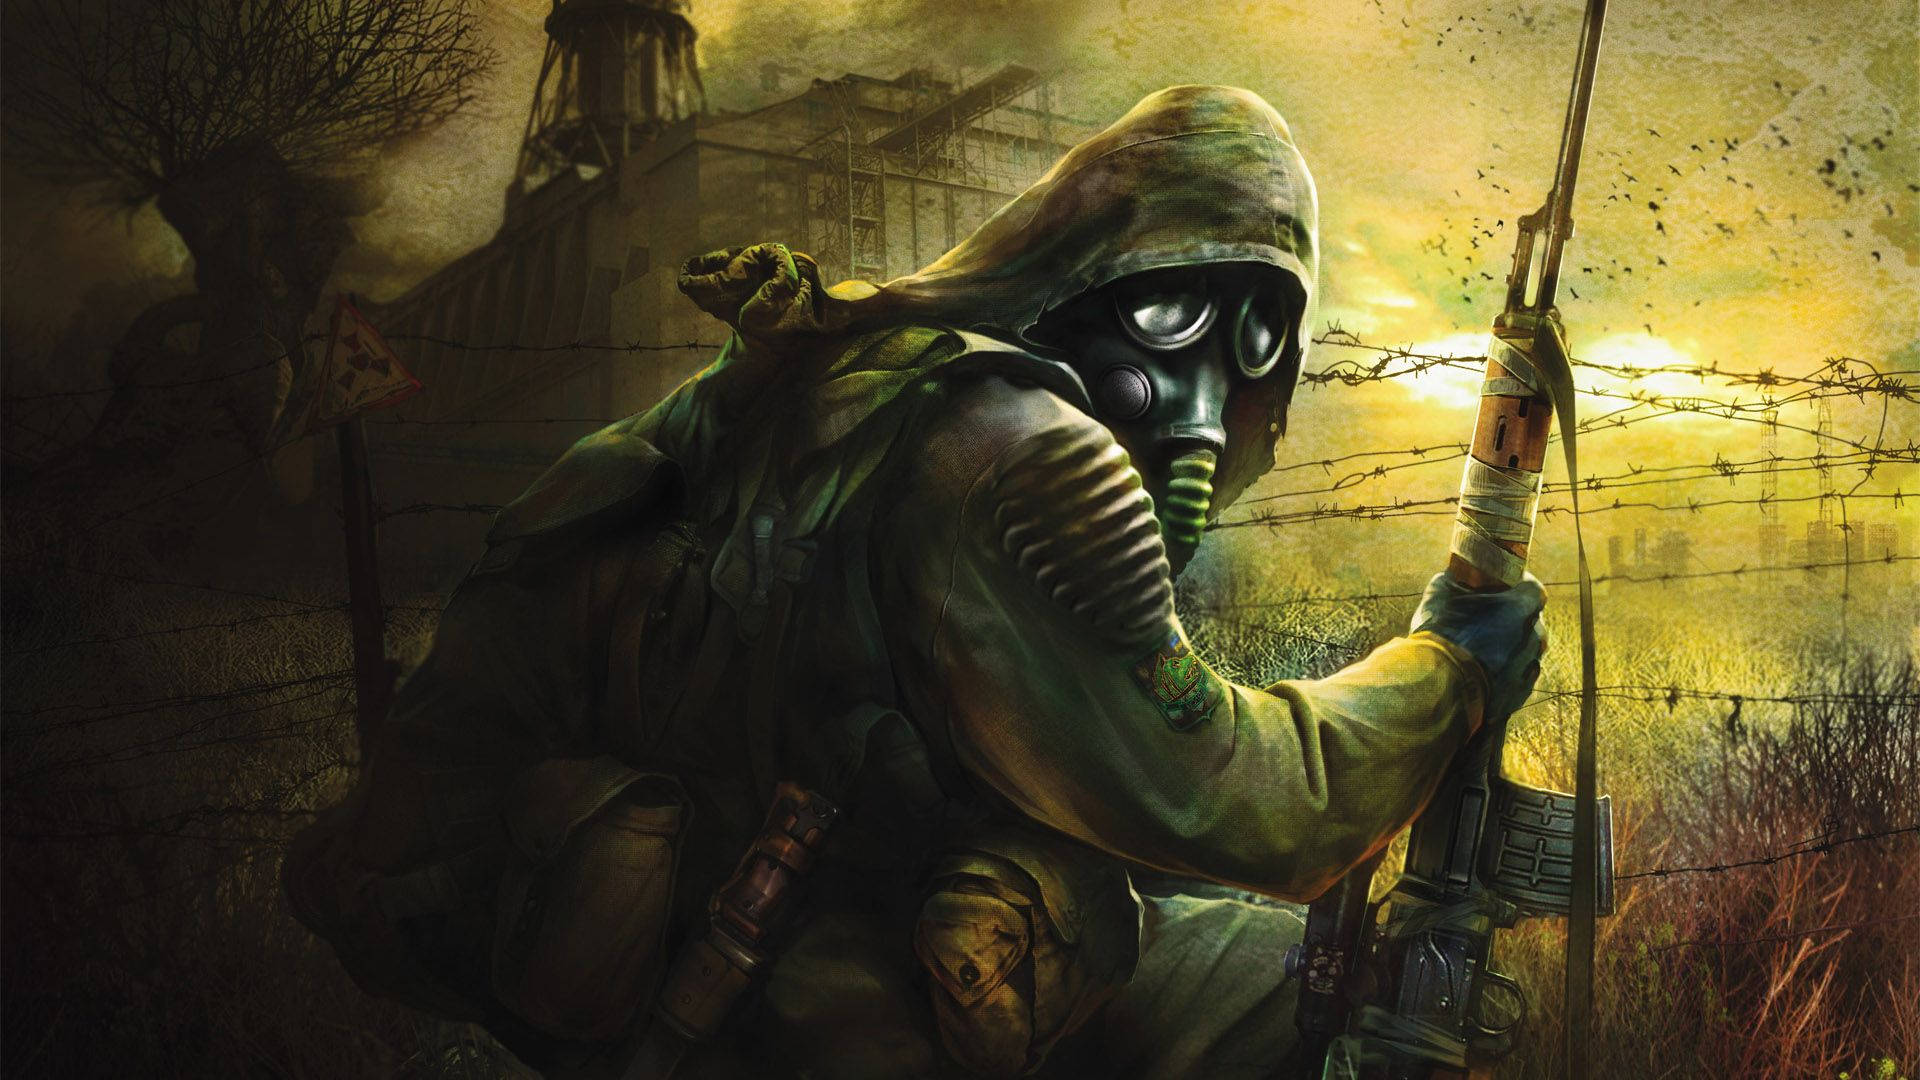 Cool Gaming Stalker Soldier Background